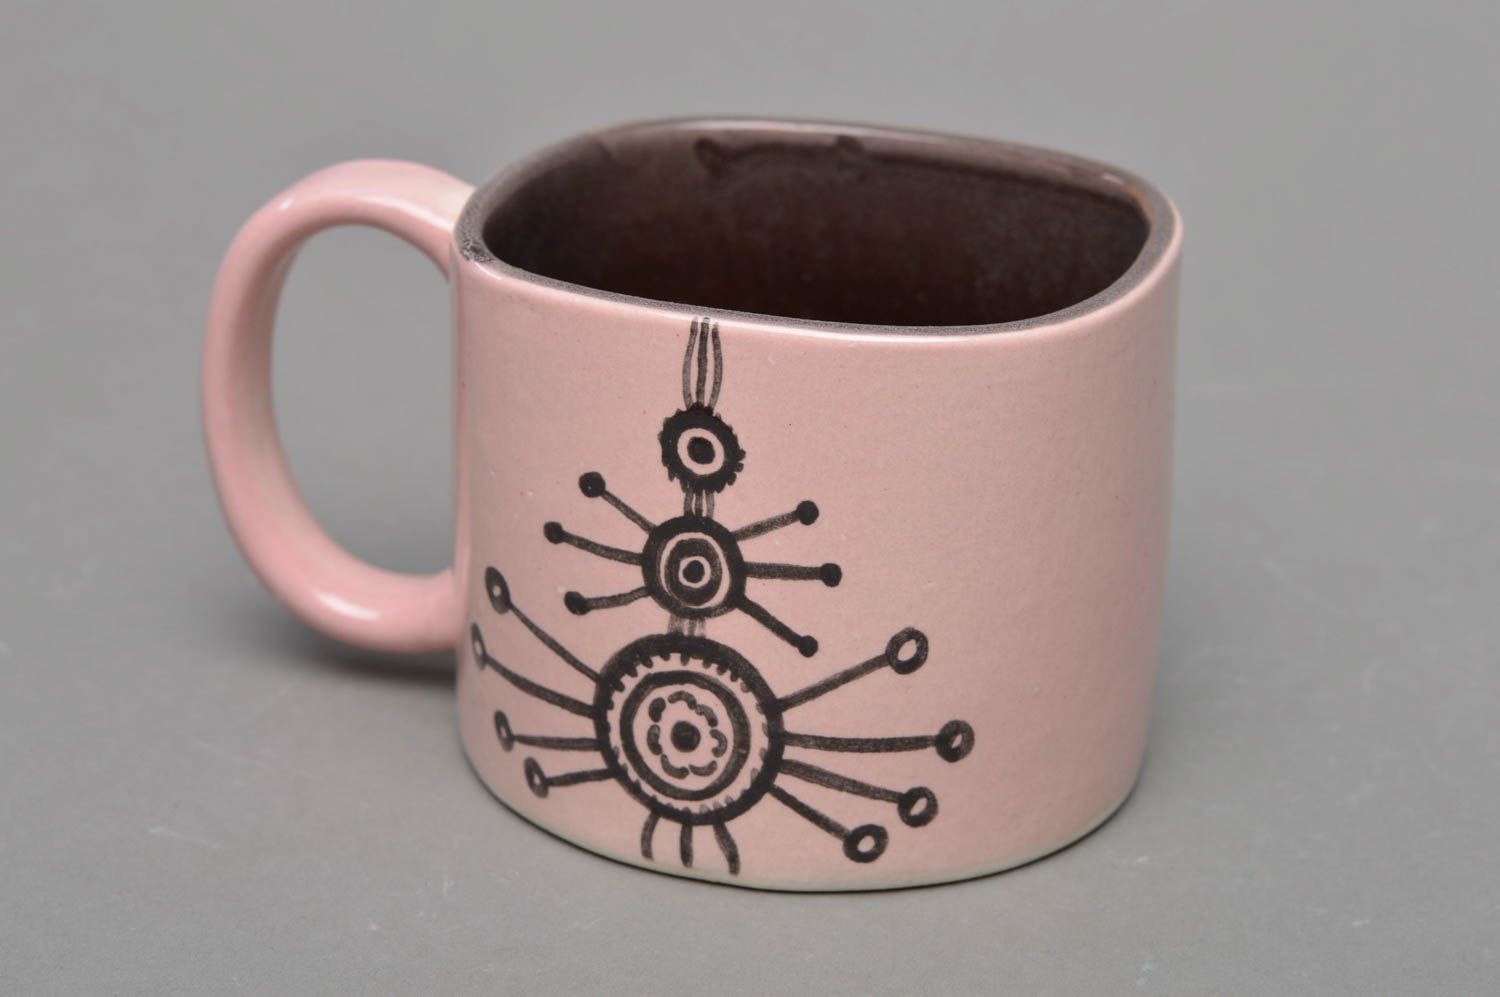 Handmade originelle Tasse aus Porzellan mit Aufschrift Dum spiro spero rosa   foto 1